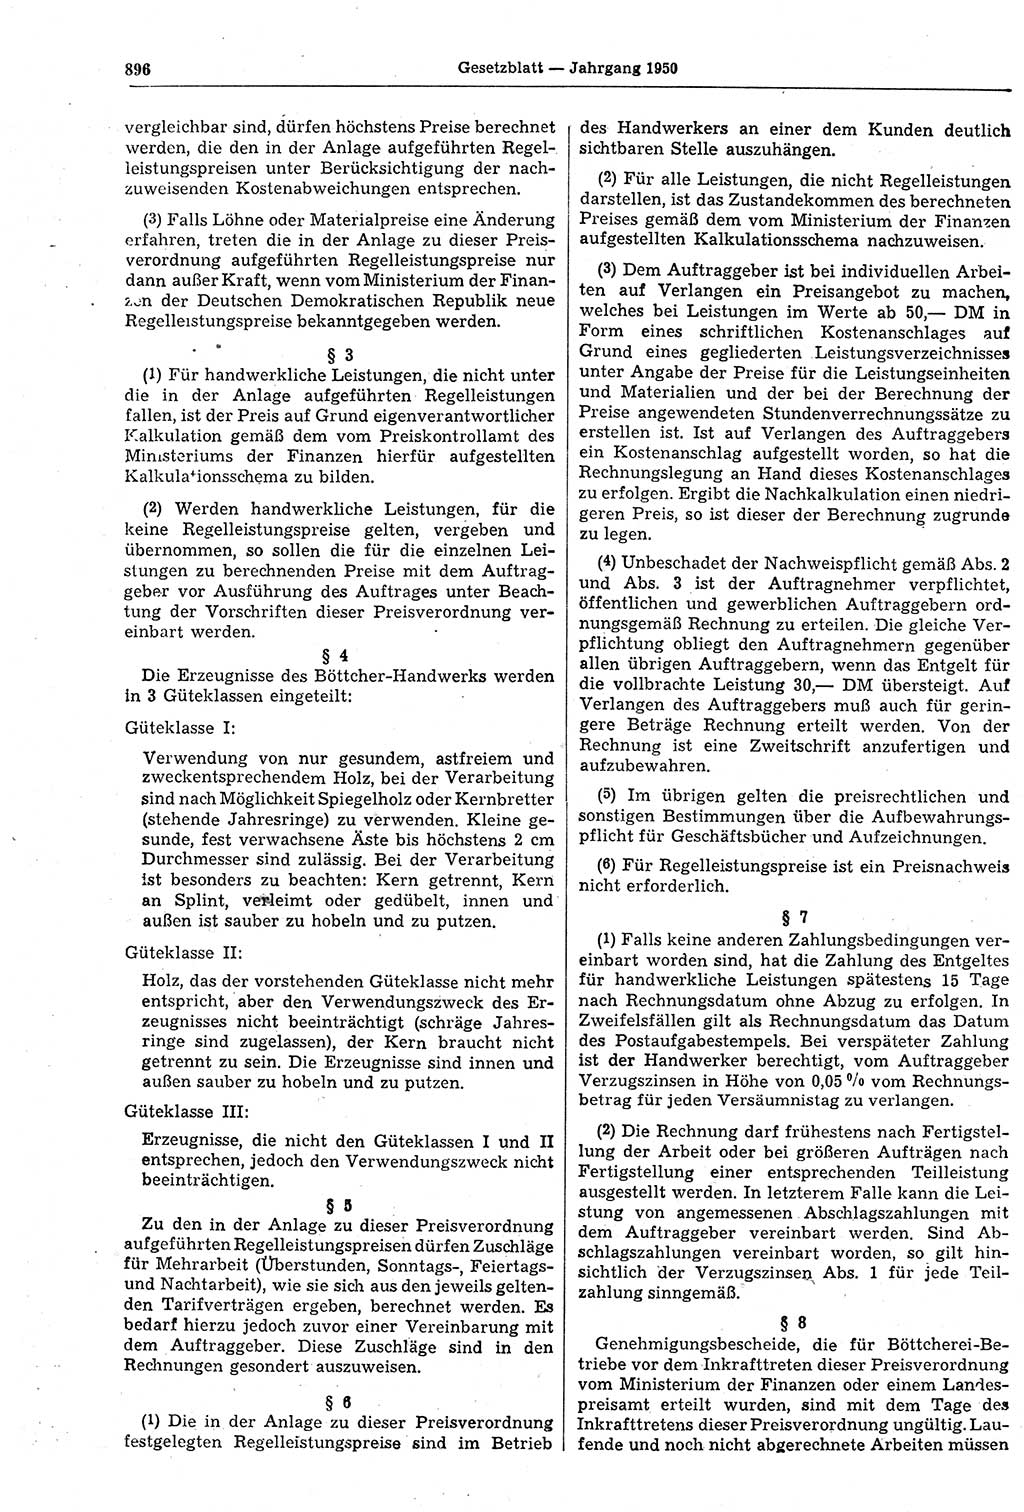 Gesetzblatt (GBl.) der Deutschen Demokratischen Republik (DDR) 1950, Seite 896 (GBl. DDR 1950, S. 896)